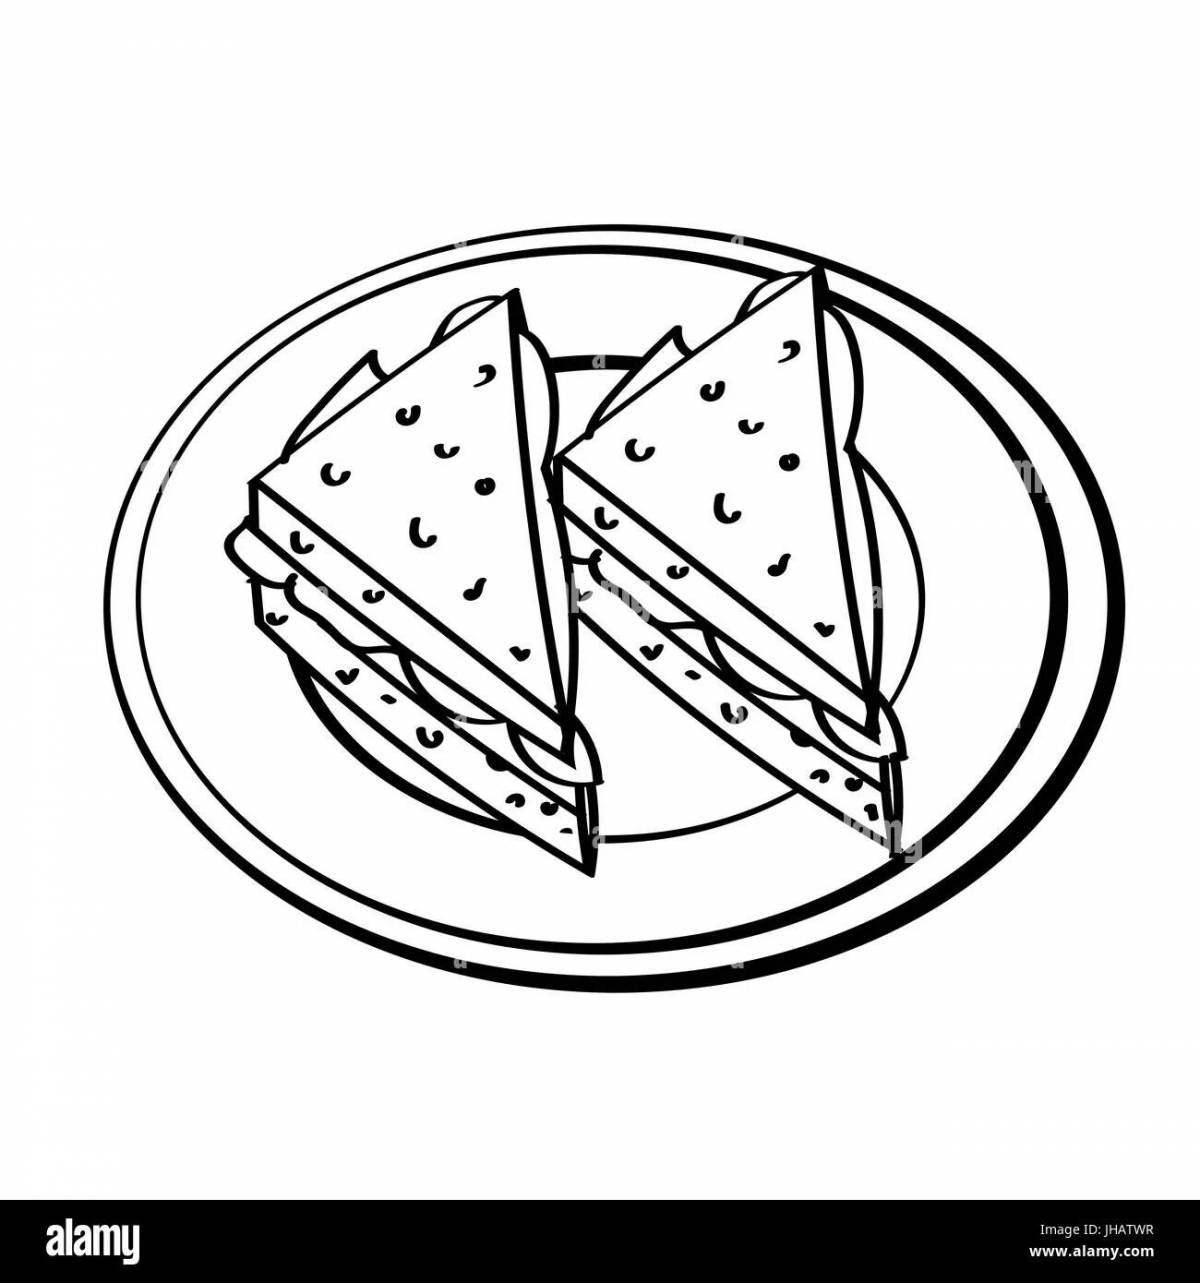 Child sandwich #11